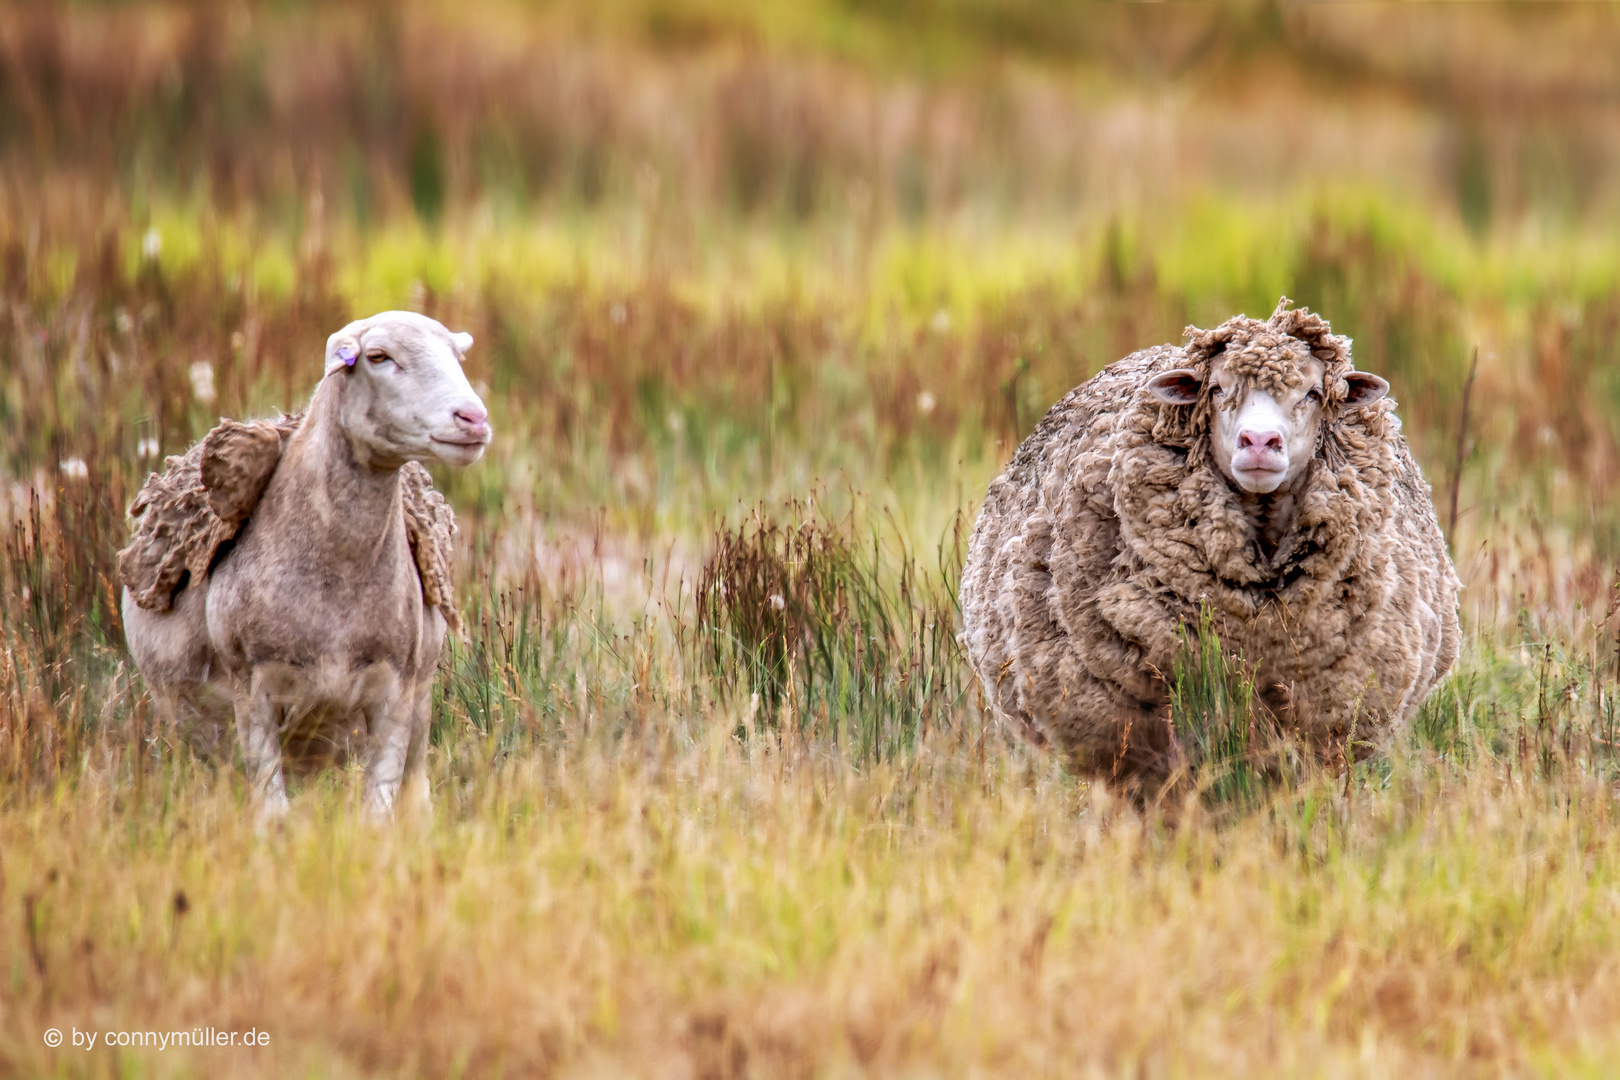 The Afrino Sheeps